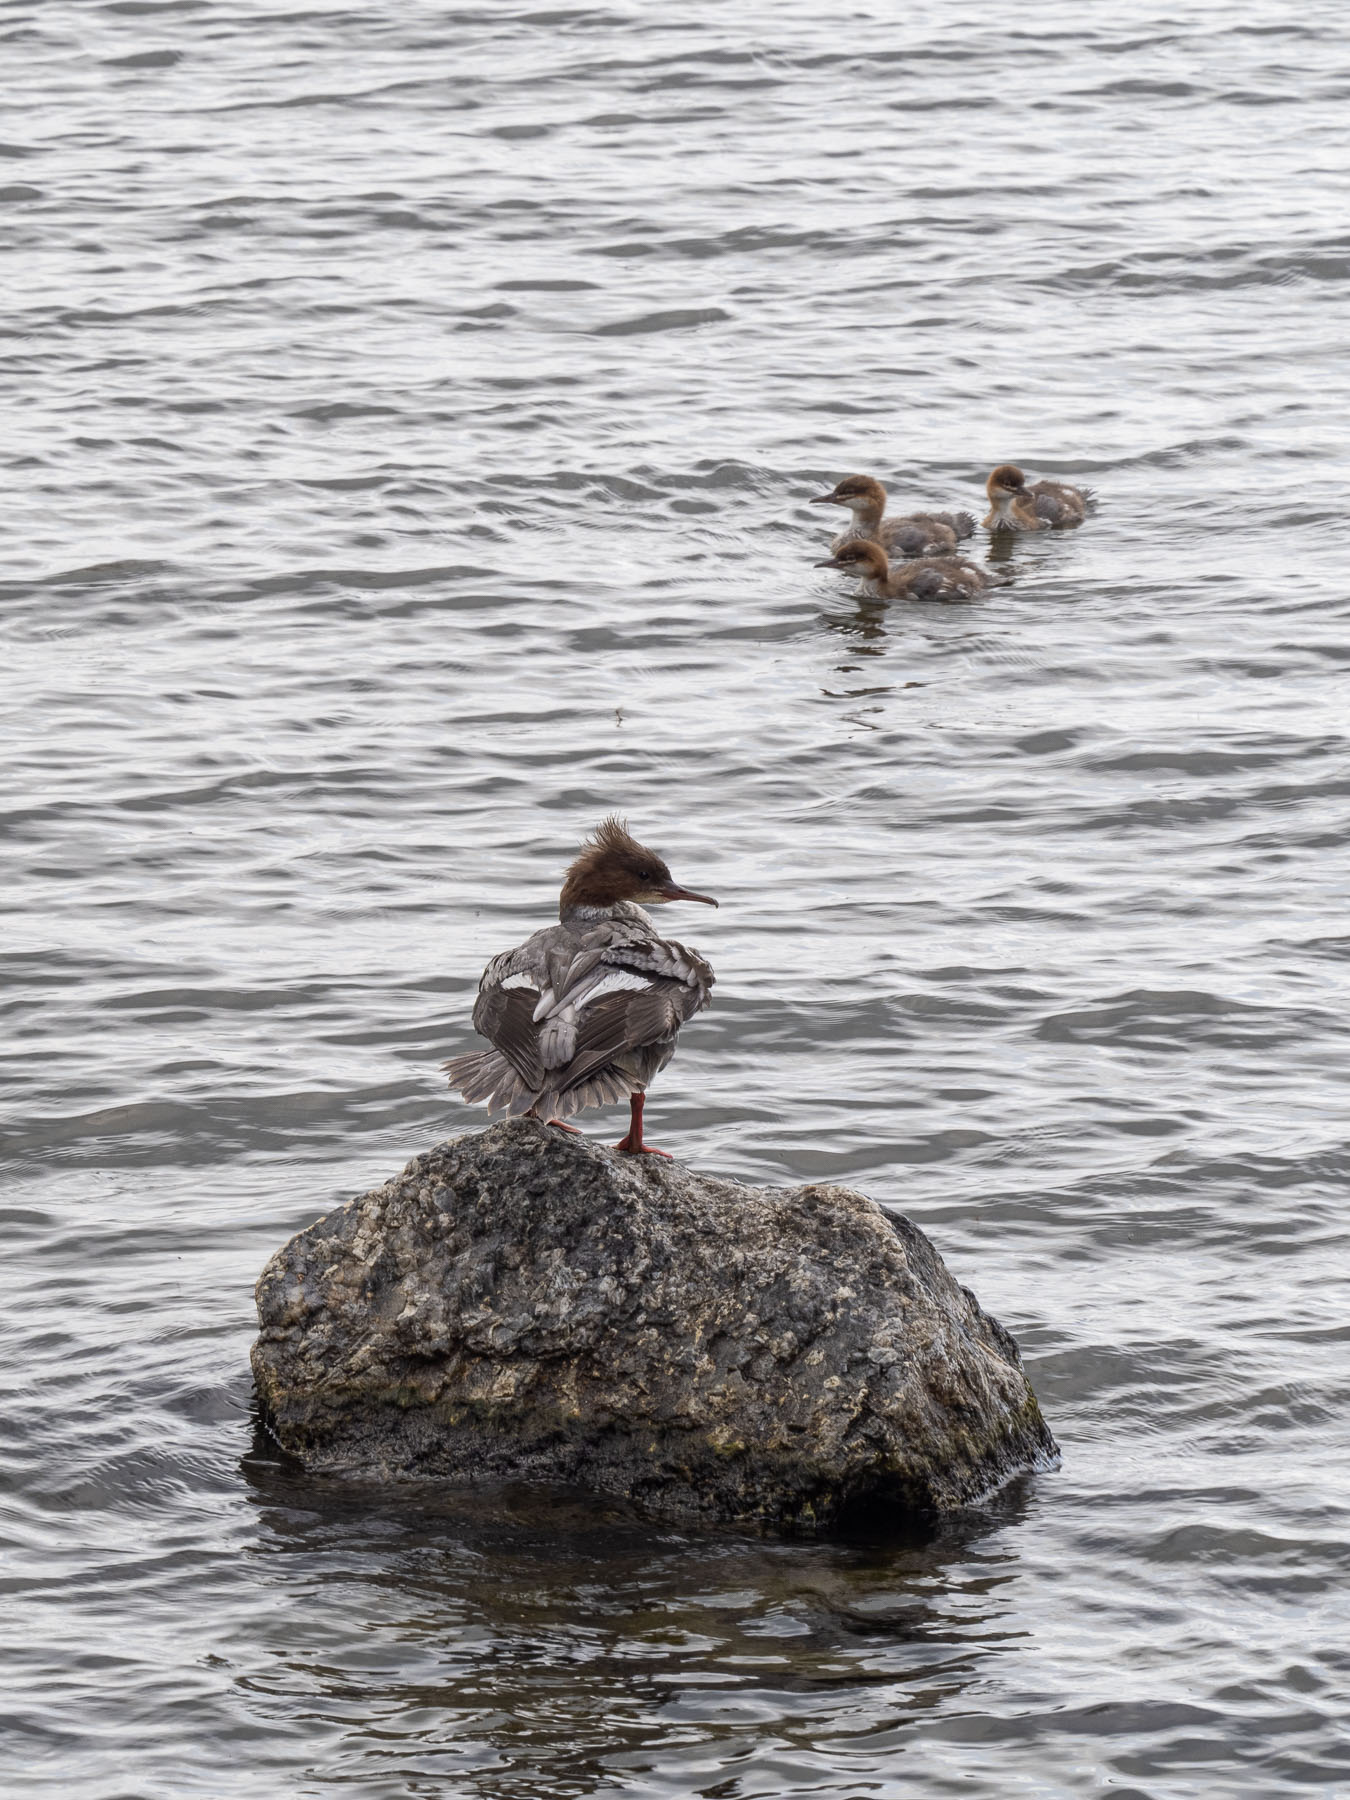 Большой крохаль (Mergus merganser)Большой крохаль (Mergus merganser).
Самка с птенцами на берегу озера M?laren, Стокгольм. Июль 2020 года. Автор фото: Сутормина Марина